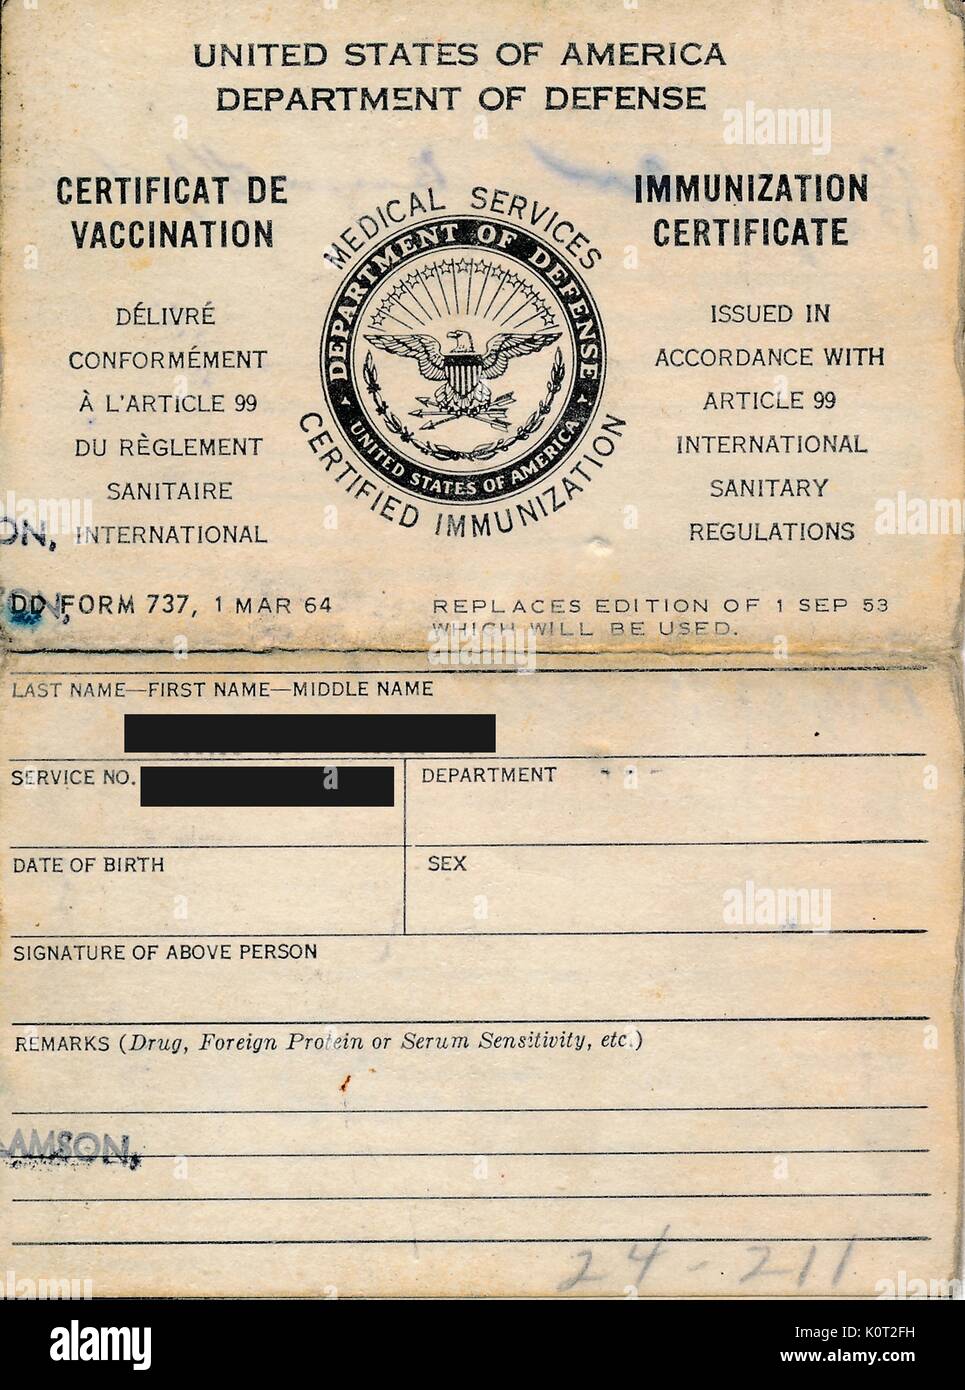 Dipartimento della Difesa degli Stati Uniti i servizi medici certificato di immunizzazione, elencando il nome e l'identità di un soldato che si è stati vaccinati prima di essere radicati in Vietnam durante la Guerra del Vietnam (identità del soldato redatto su digital artefatto per proteggere la privacy), 1964. Foto Stock